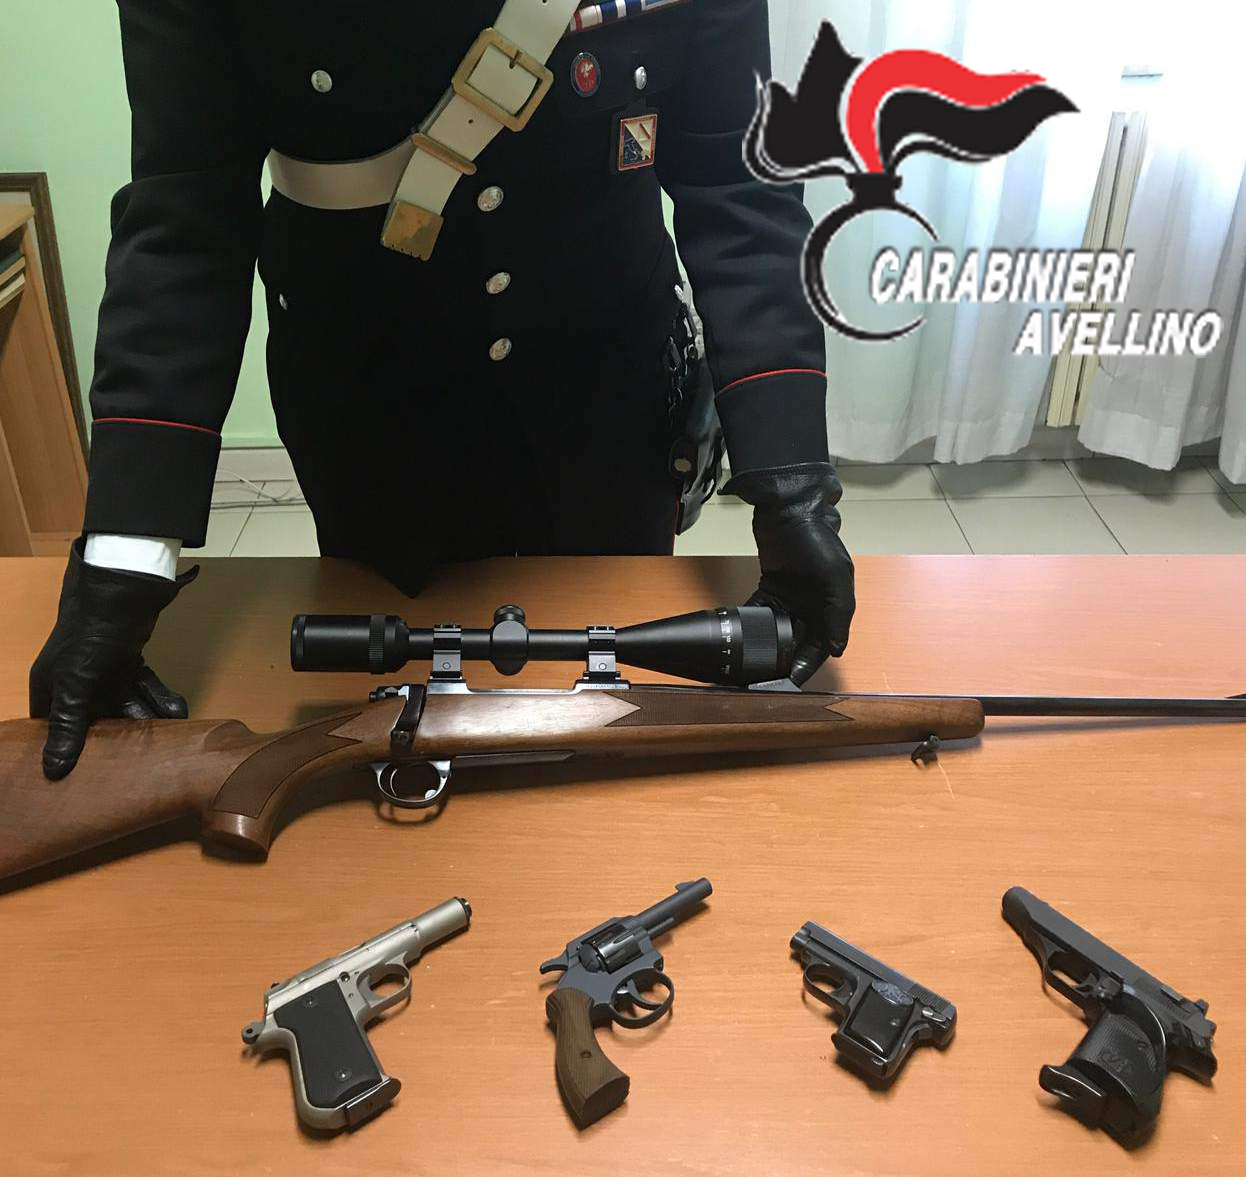 Melito Irpino| In giro con due pistole in borsa, mamma e figlio denunciati